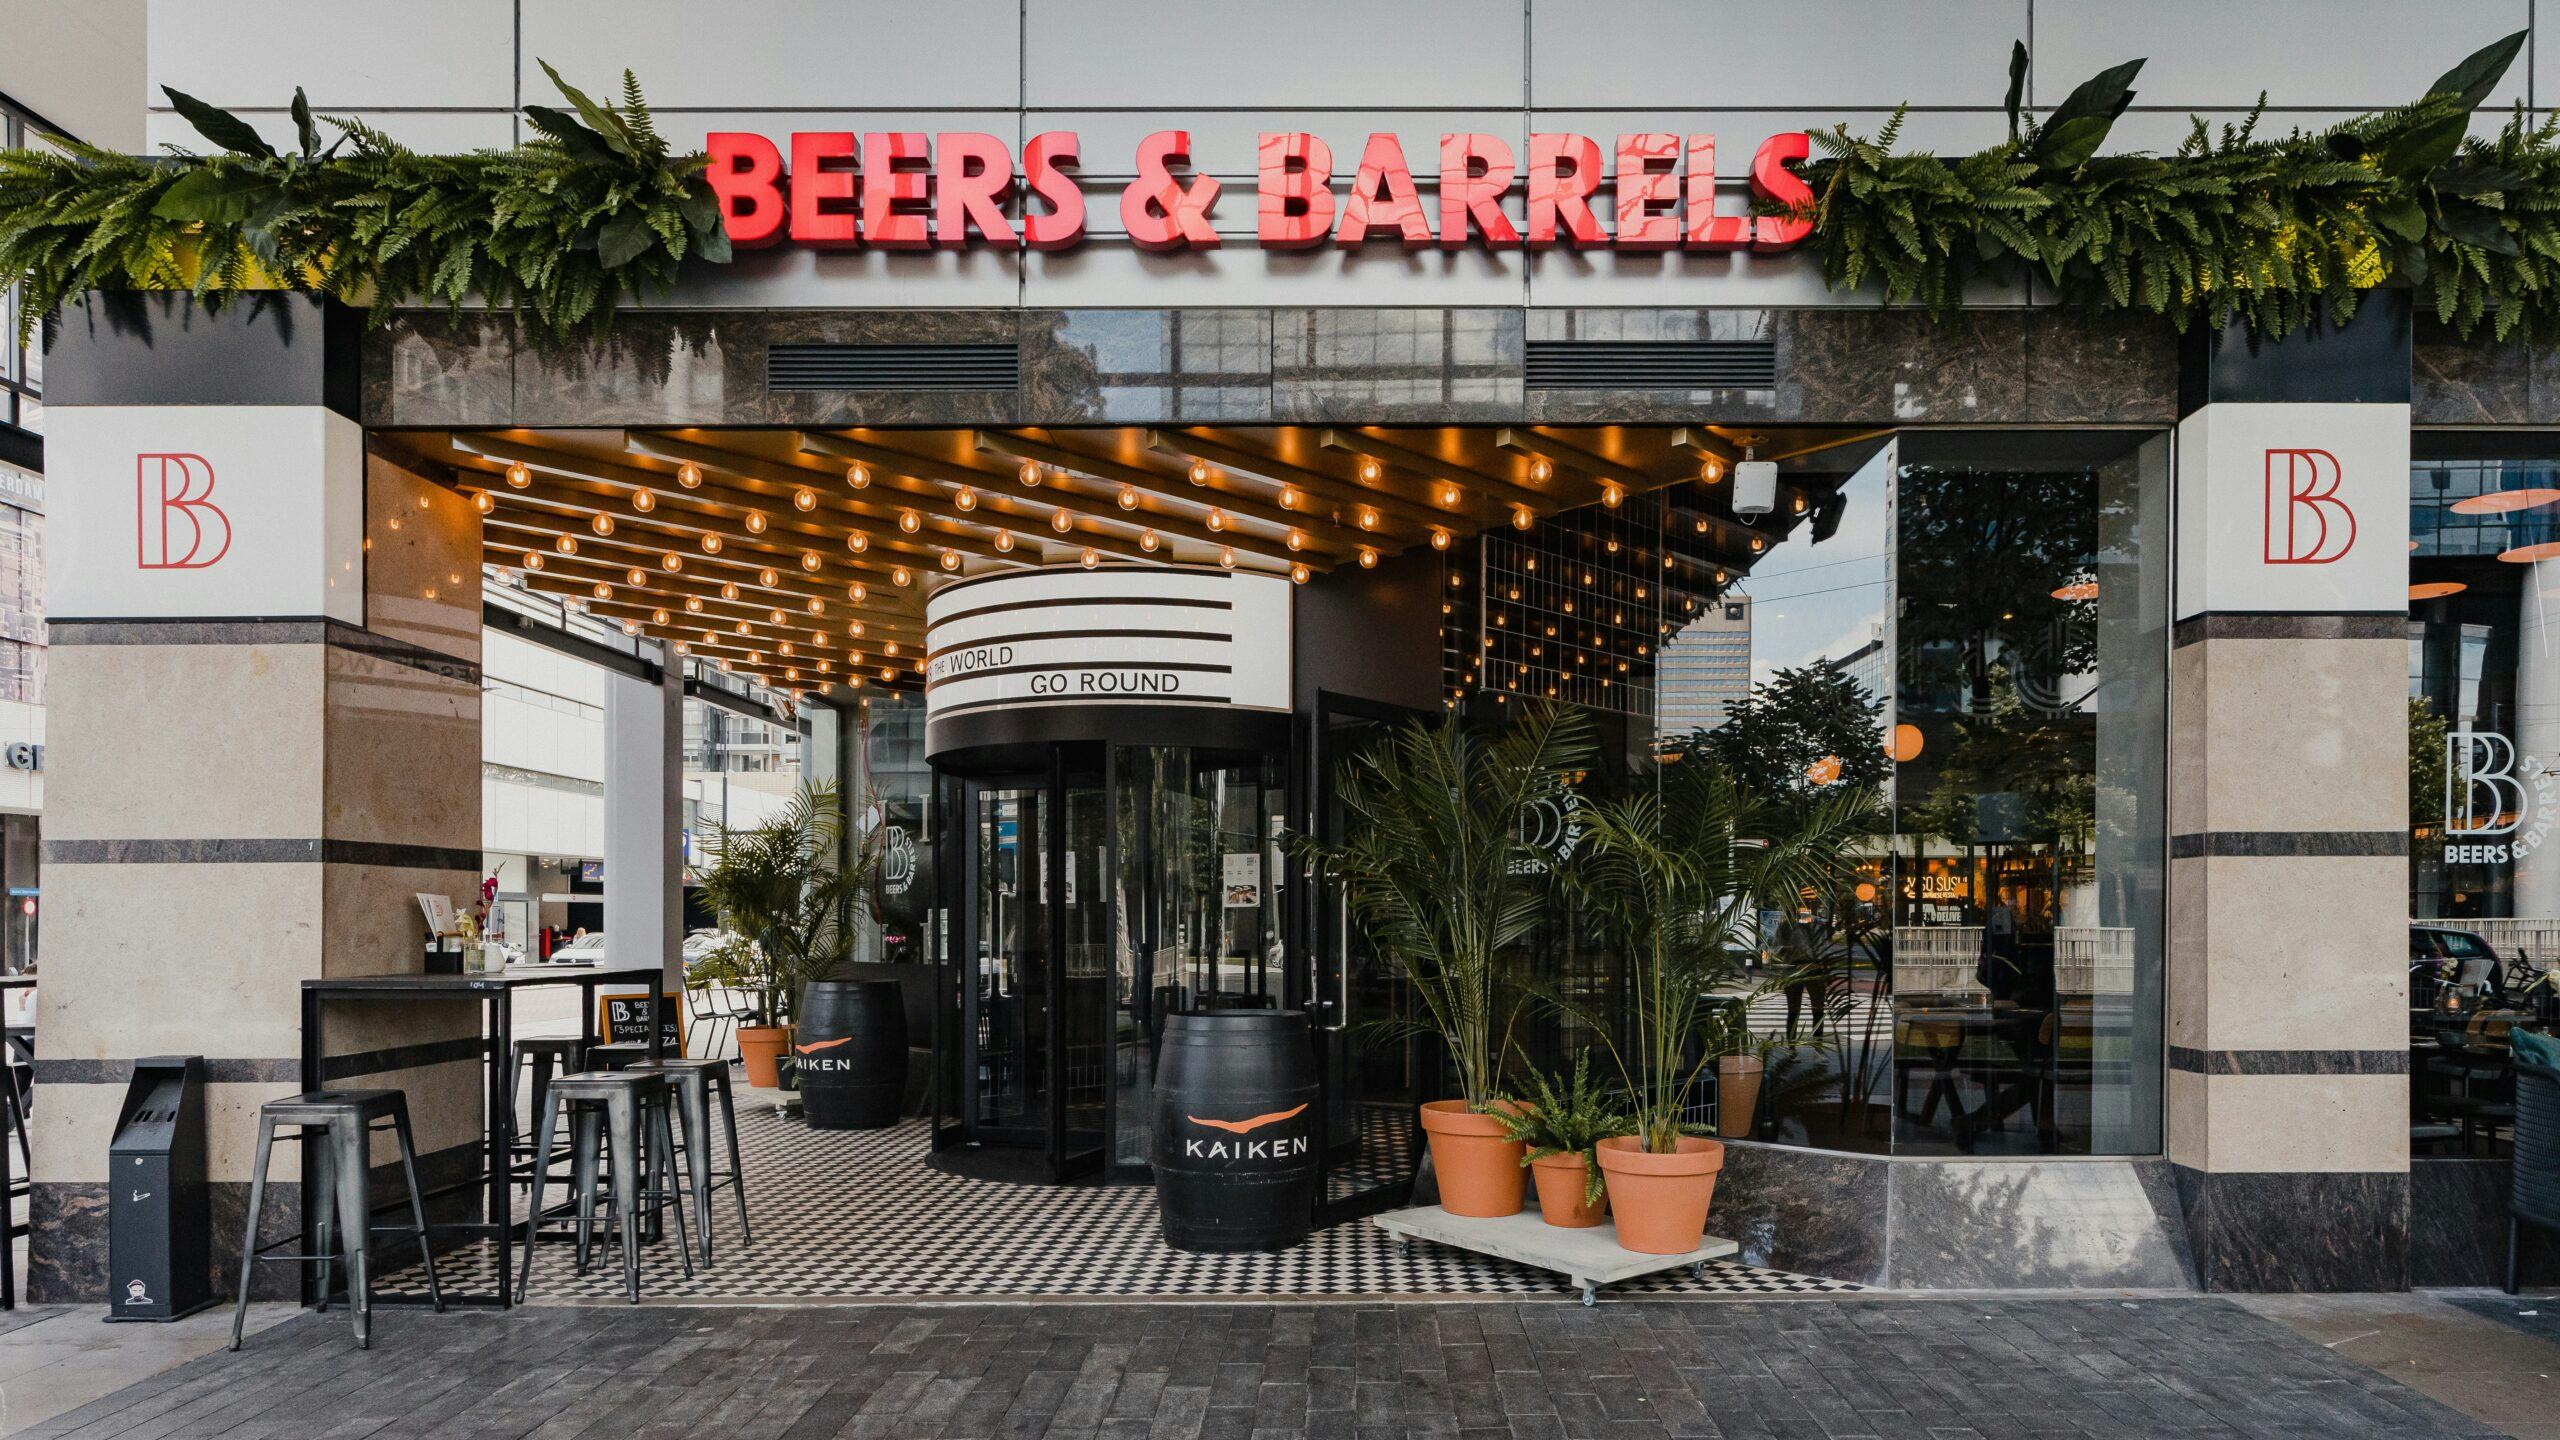 Binnenkijken bij Beers & Barrels Rotterdam